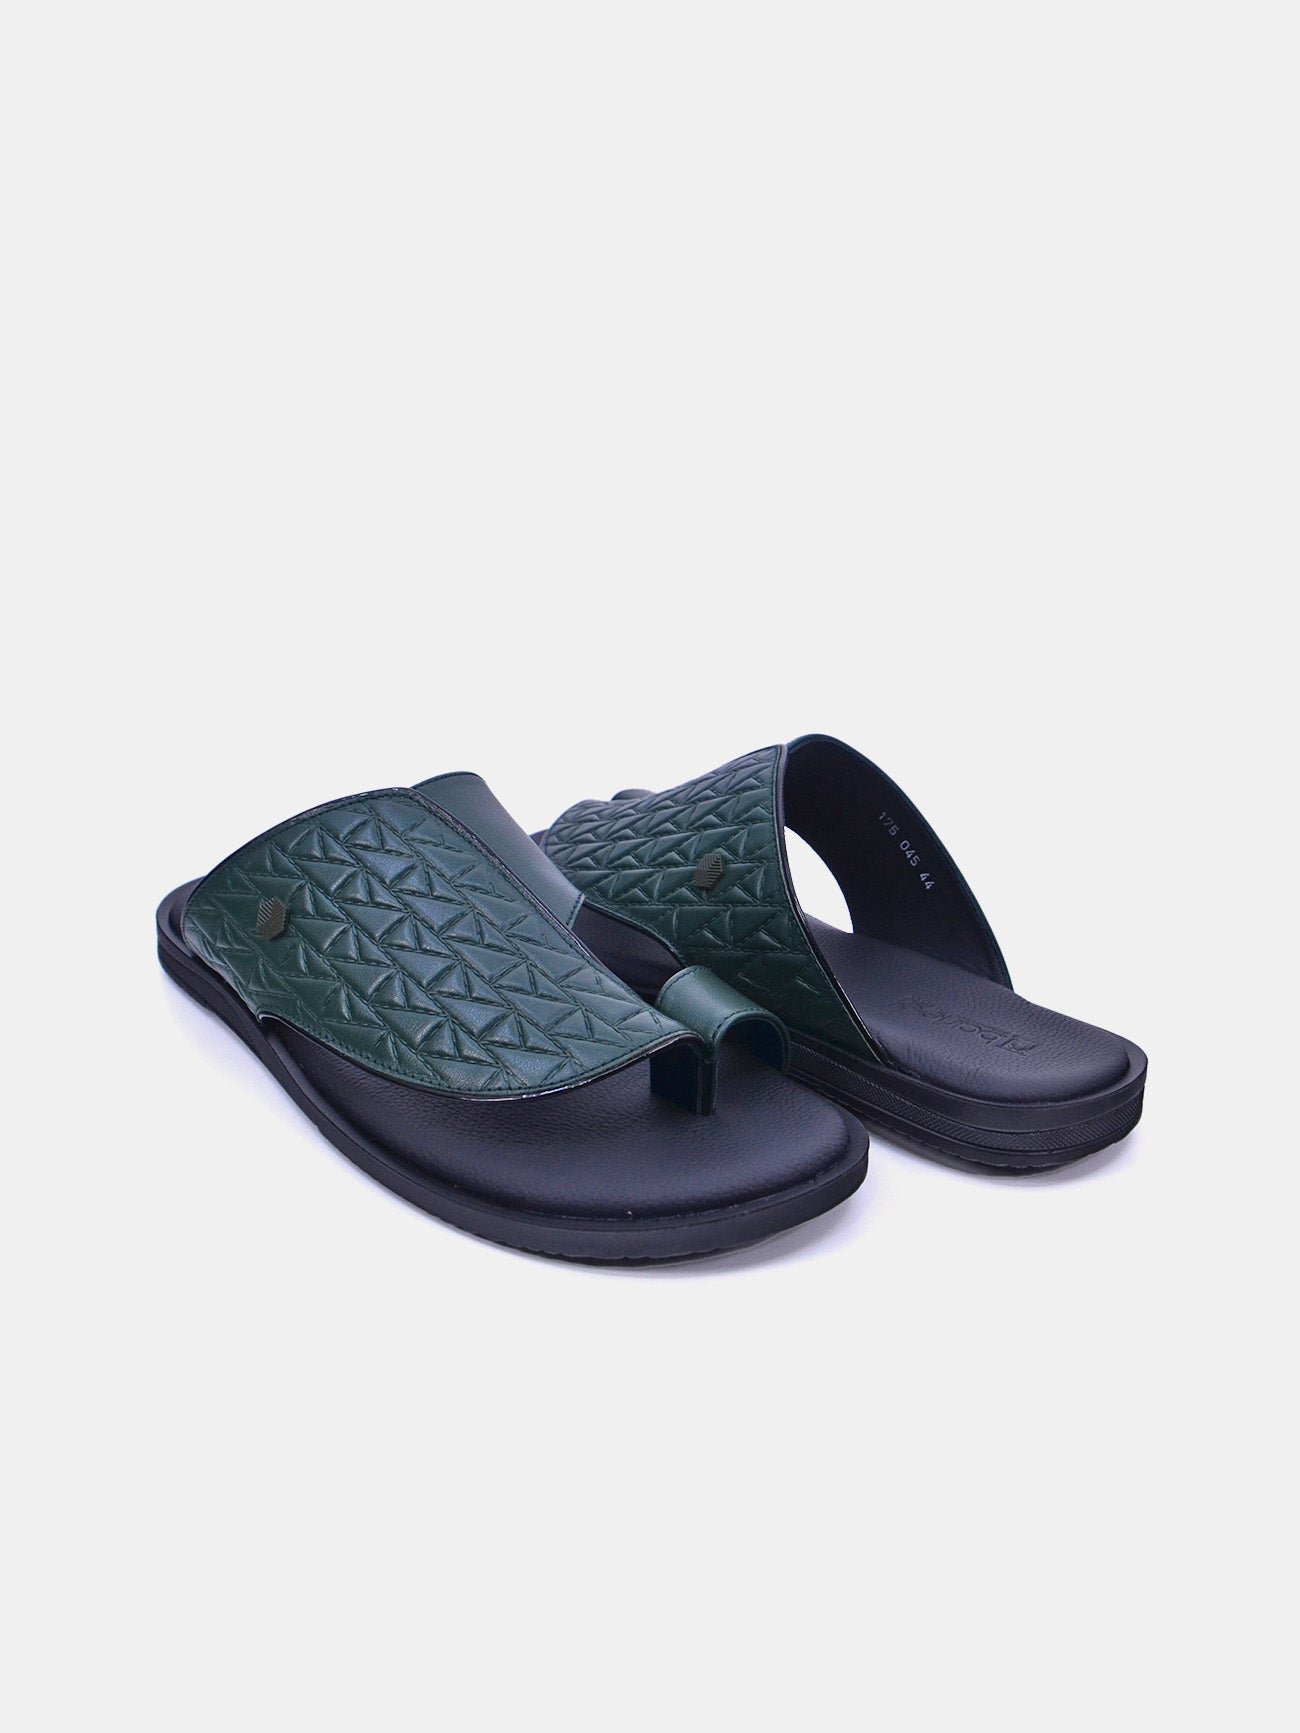 Barjeel Uno 175-045 Men's Sandals #color_Green